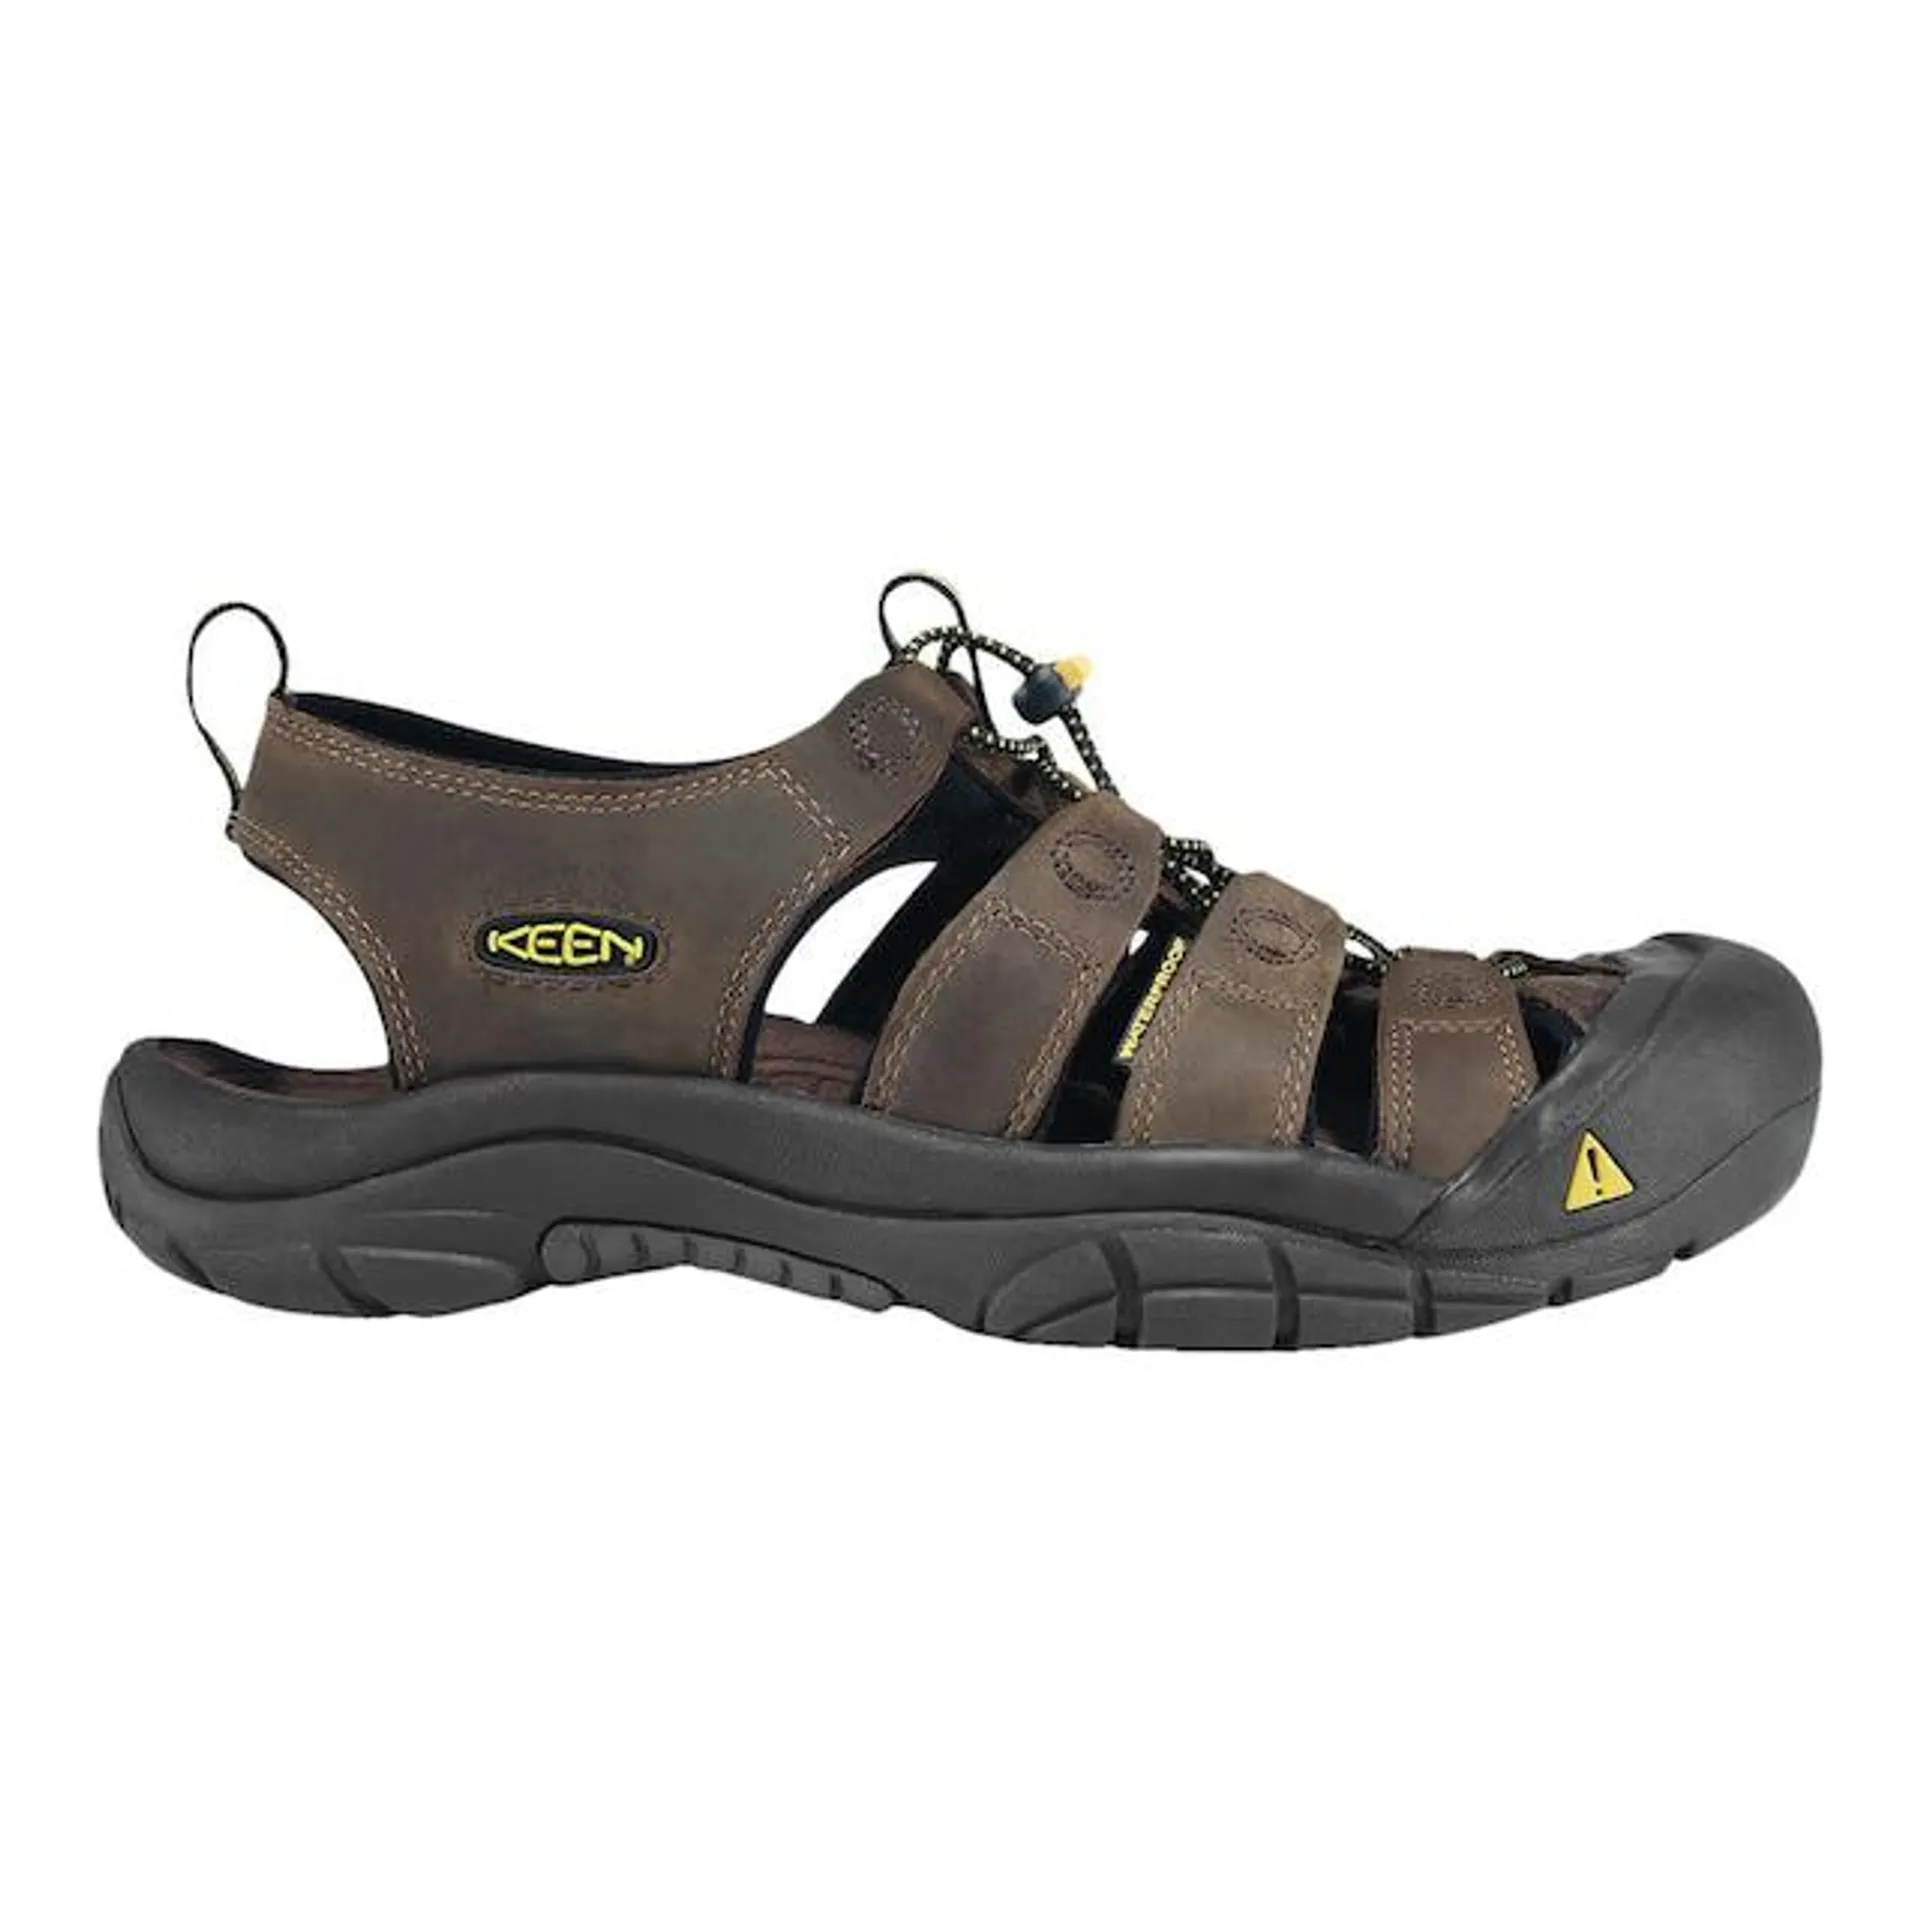 Keen Men's Newport Multi Strap Hiking Sandals, Outdoor, Water, Sport